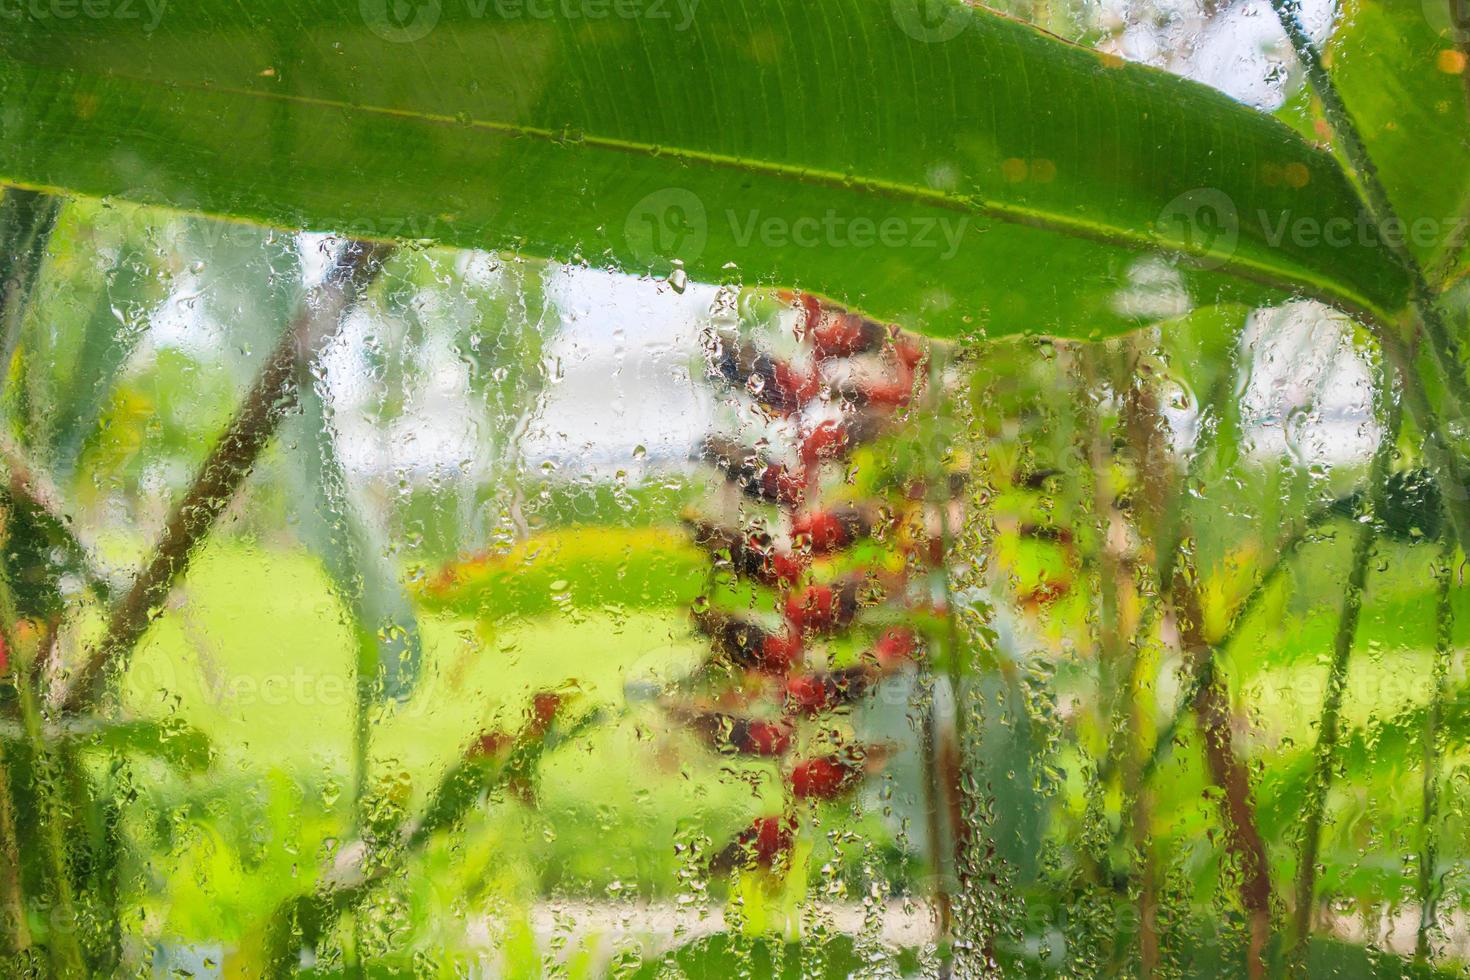 vatten droppar på fönster glas med fläck trädgård bakgrund foto